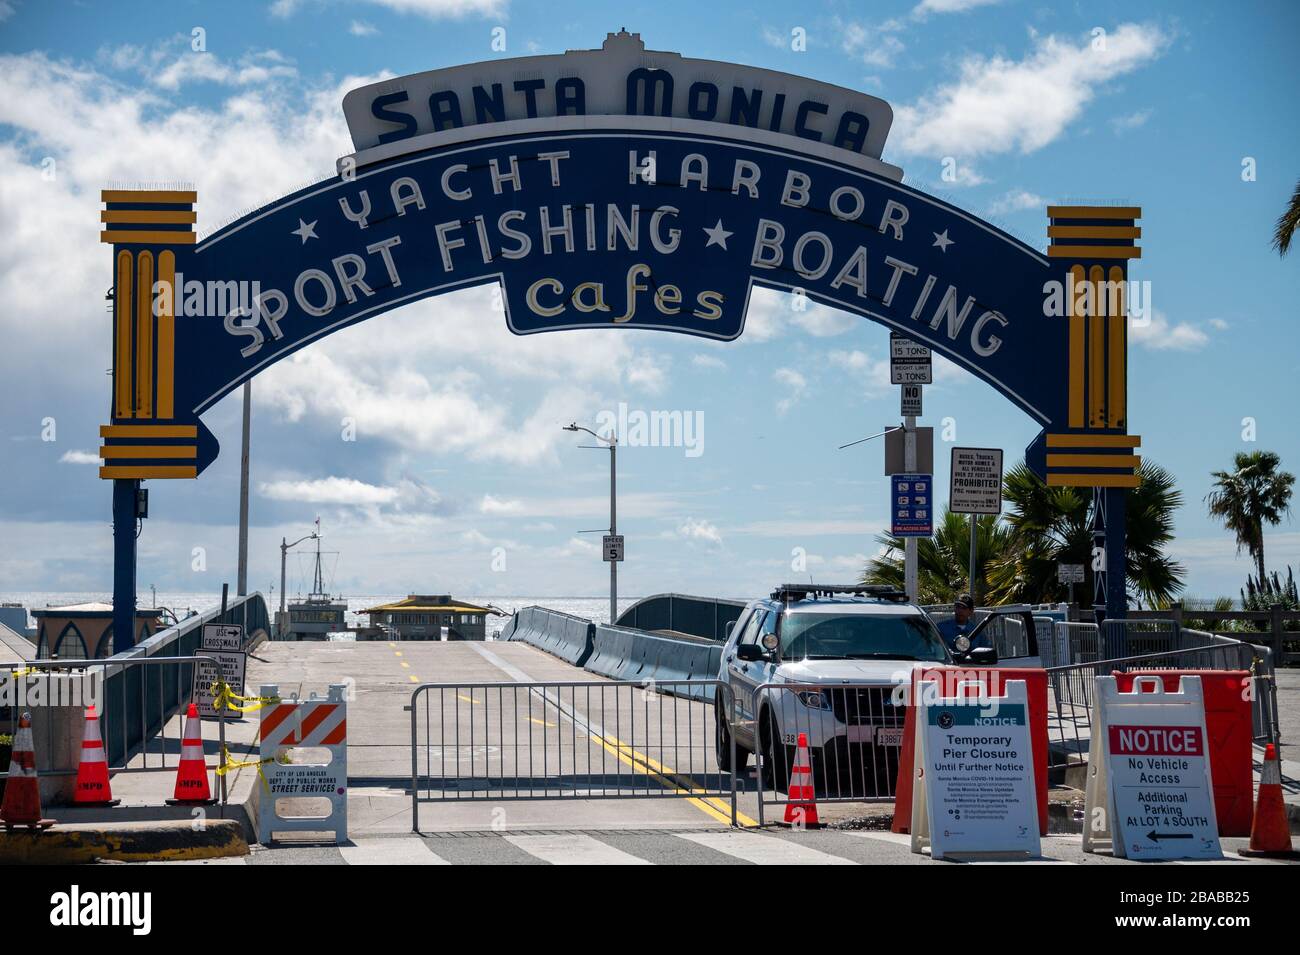 Un véhicule de police est l'entrée d'une jetée fermée de Santa Monica, l'une des attractions touristiques les plus populaires du sud de la Californie le 25 mars 2020 Banque D'Images